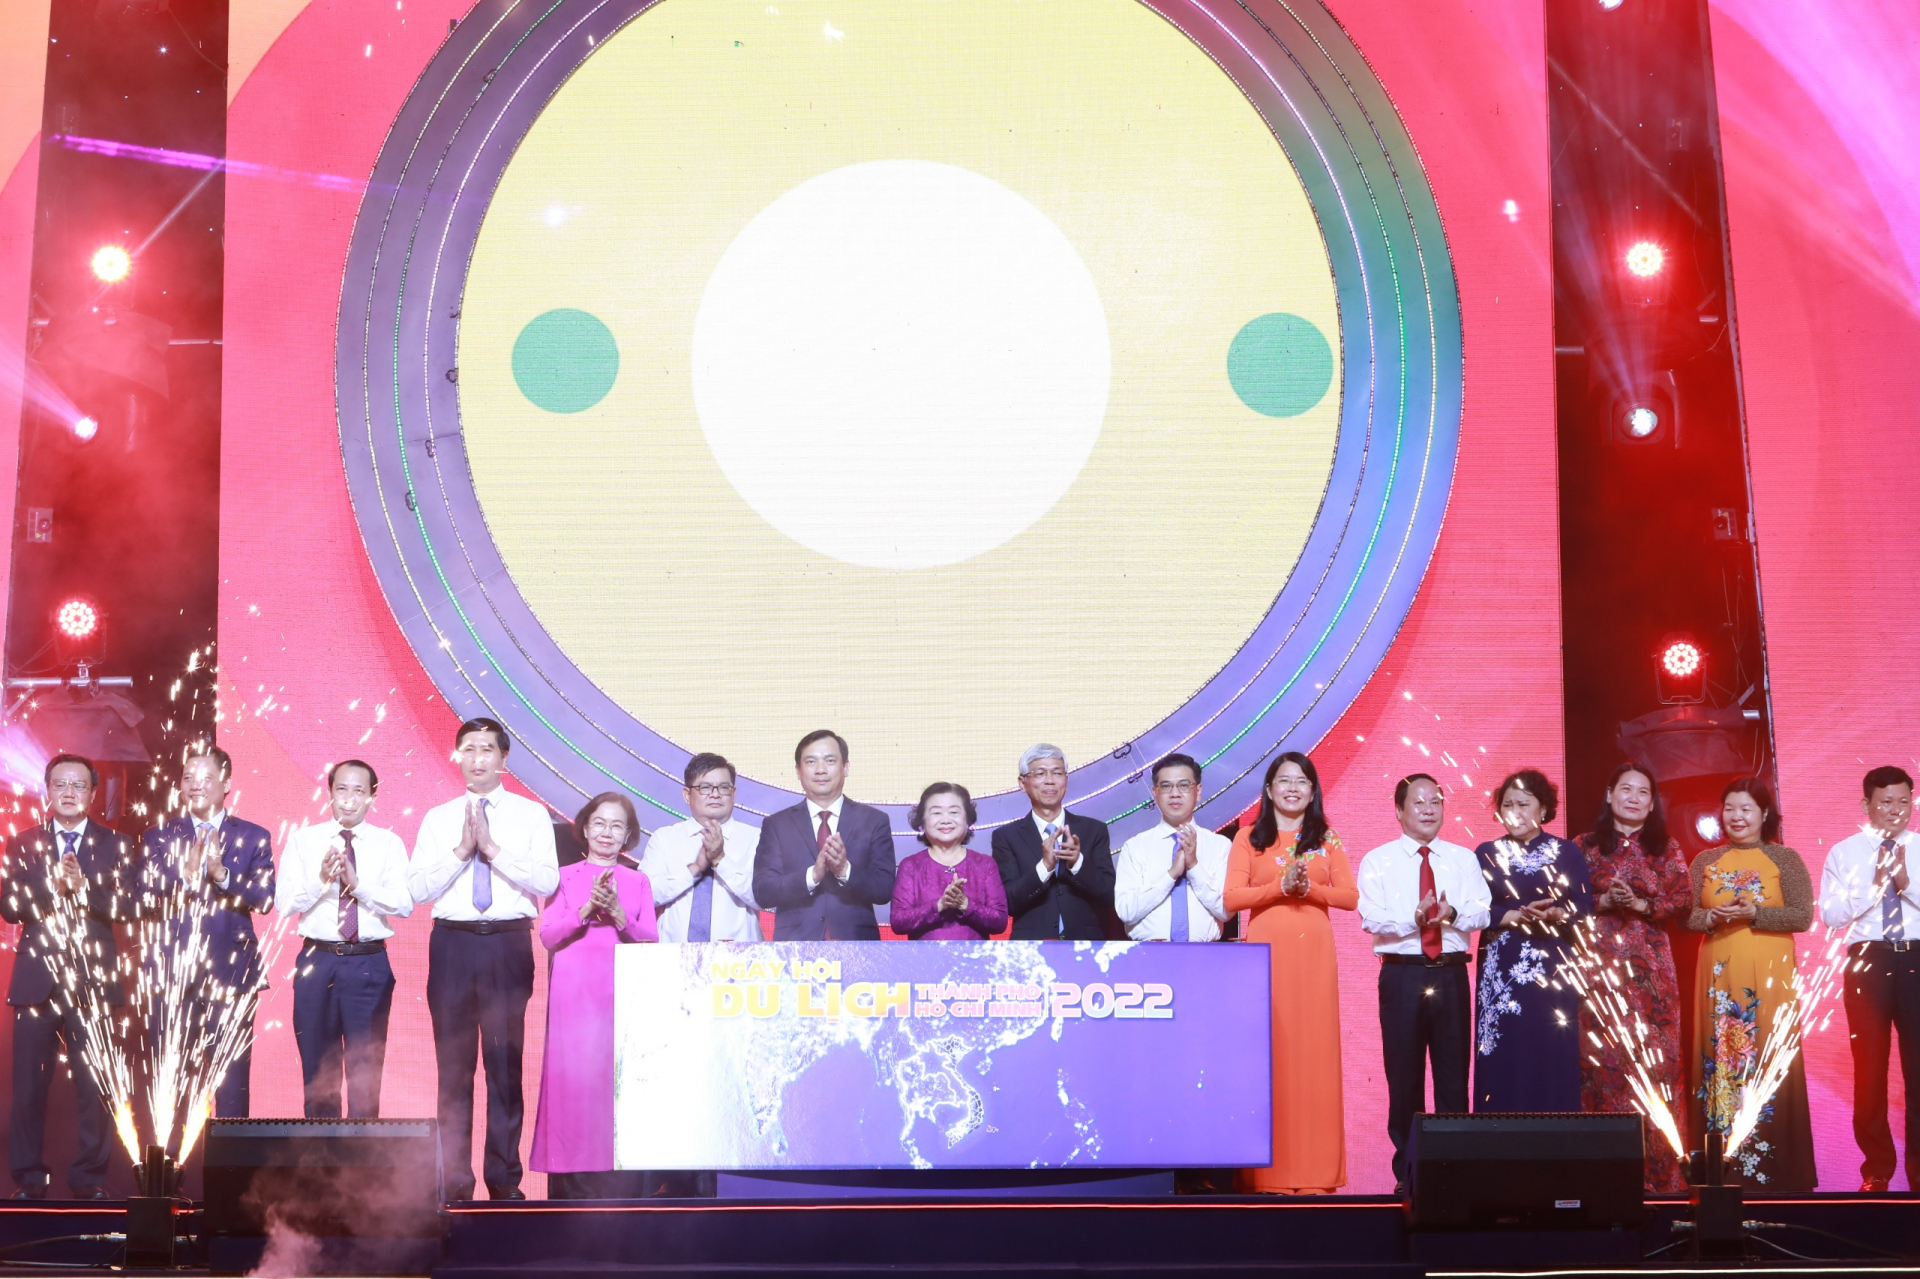 Phó Chủ tịch UBND tỉnh Trần Đức Quý cùng các đại biểu khai mạc Ngày hội Du lịch Thành phố Hồ Chí Minh lần thứ 18 năm 2022.